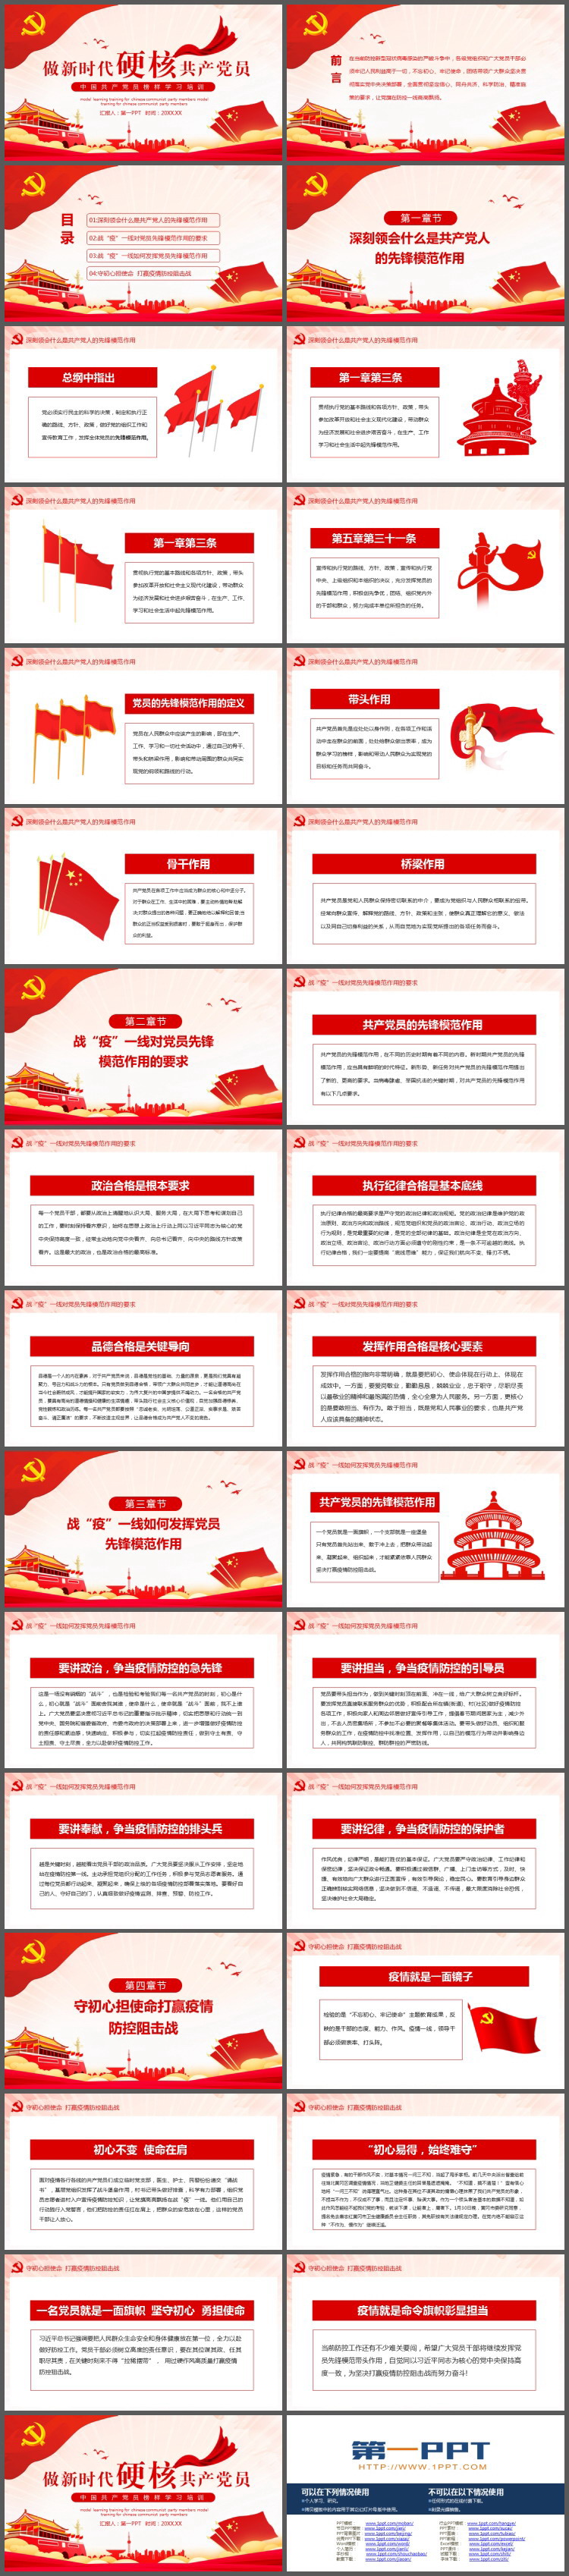 《做新时代硬核共产党员》中国共产党员榜样学习培训PPT